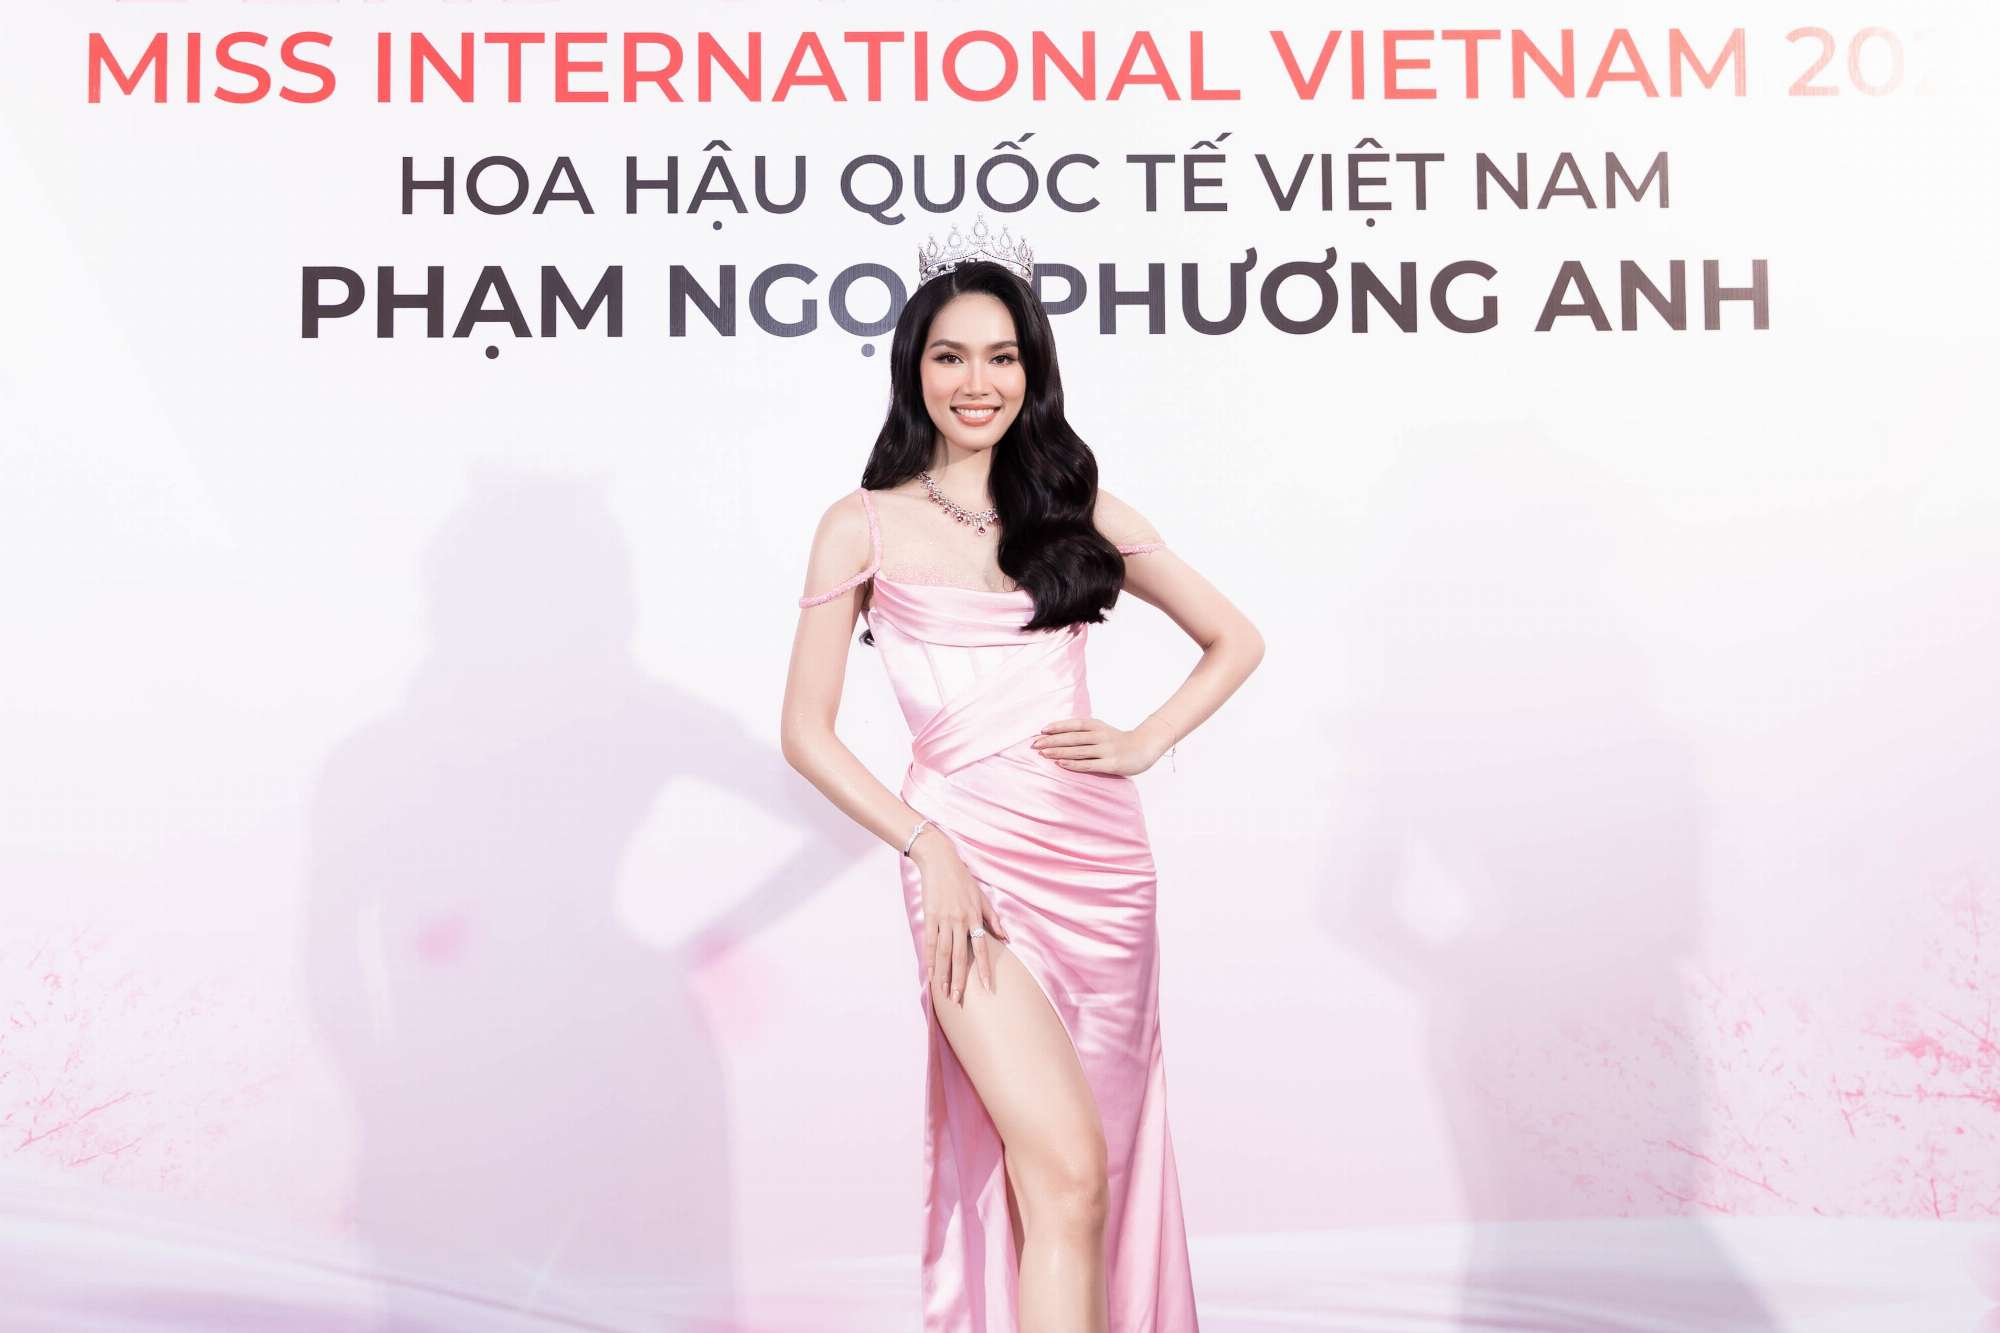 Theo thông báo trước đấy, Phạm Ngọc Phương Anh - Á hậu 1 Hoa hậu Việt Nam 2020 sẽ đại diện Việt Nam tham gia Hoa hậu Quốc tế (Miss International).